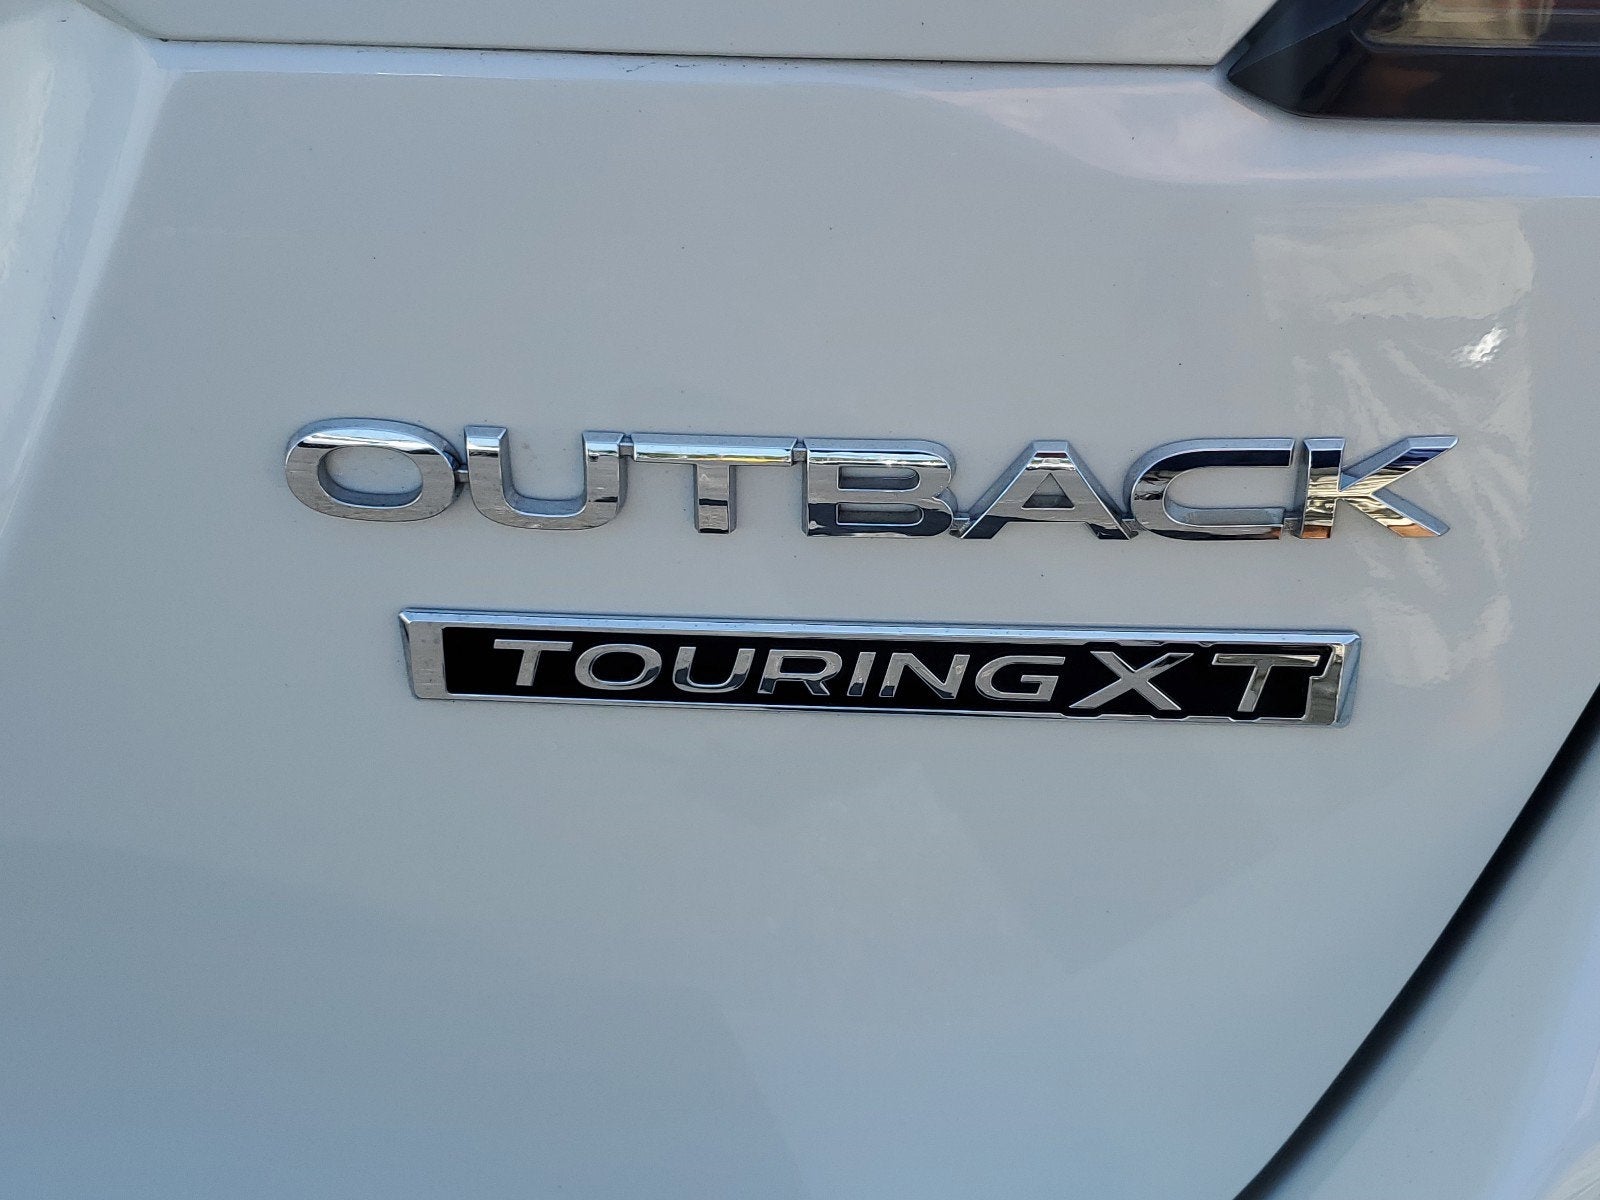 2023 Subaru Outback Touring XT